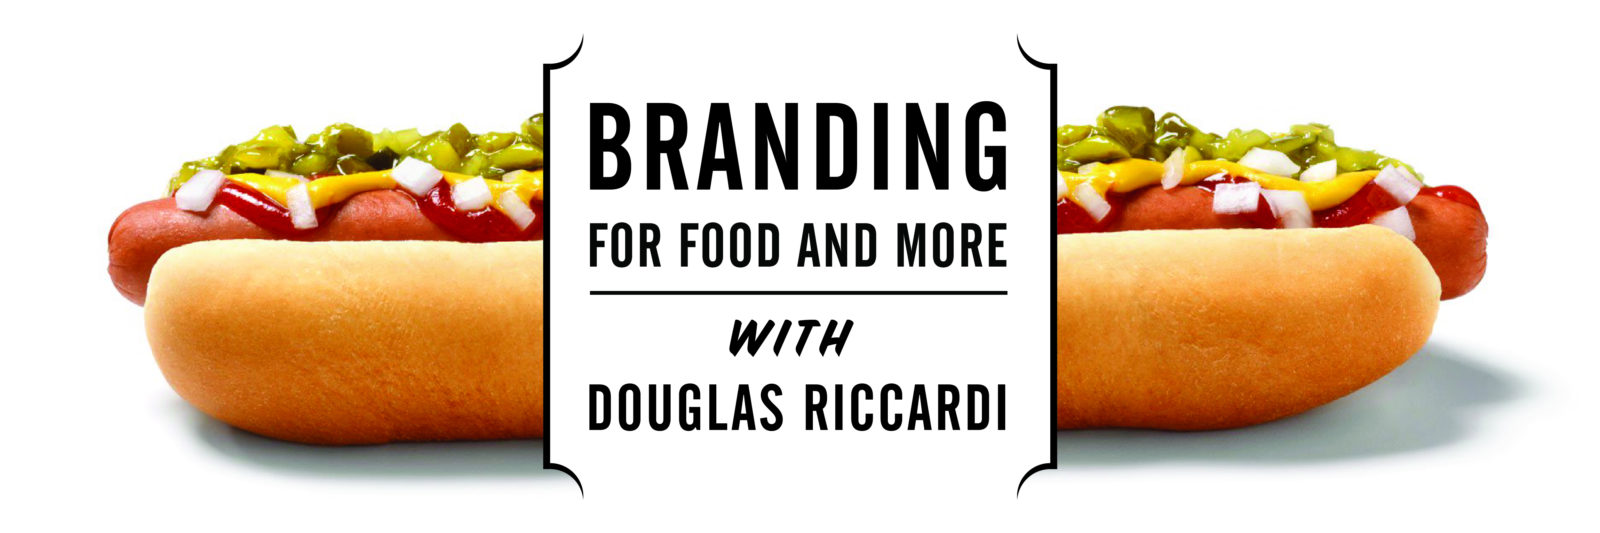 Branding for food